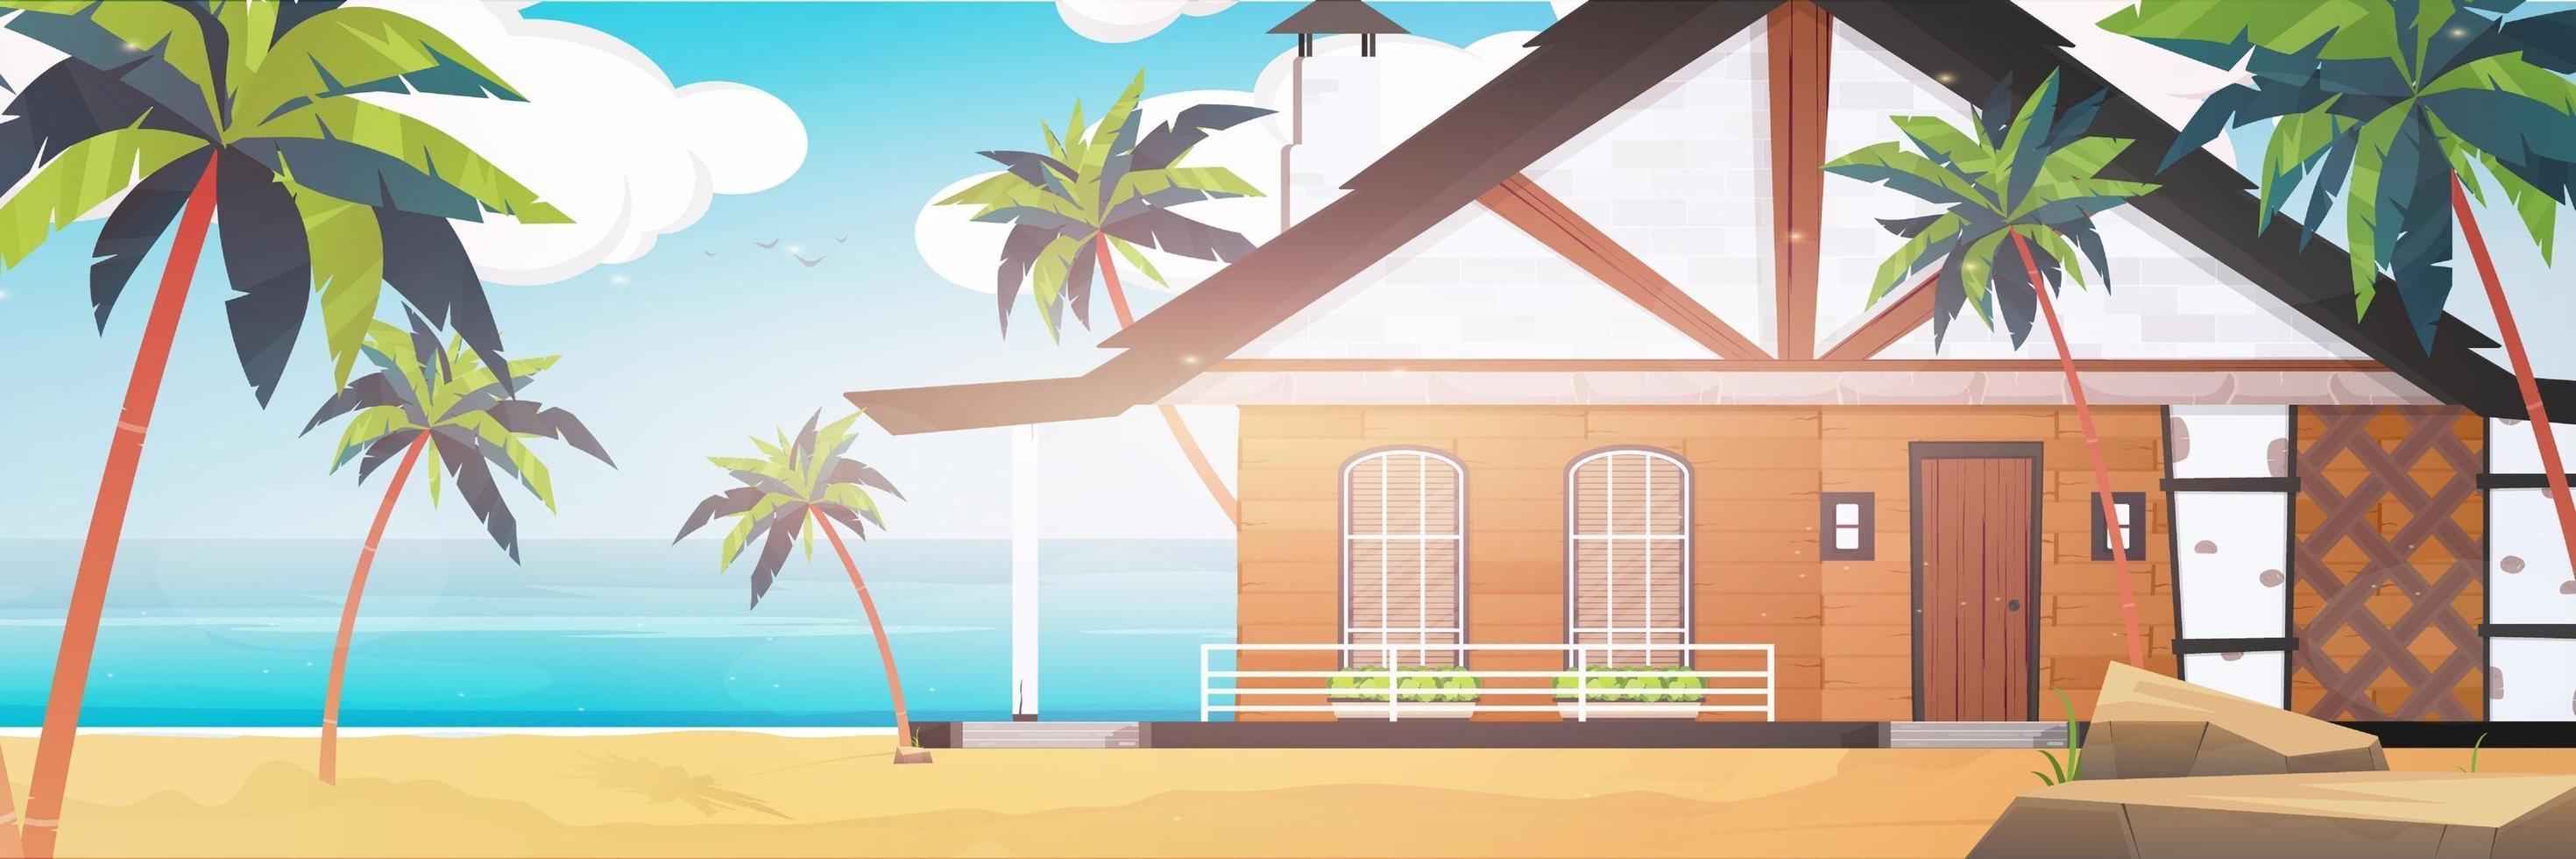 villa på en sandstrand med palmer. sommar semester koncept. vektor illustration. tecknad stil.